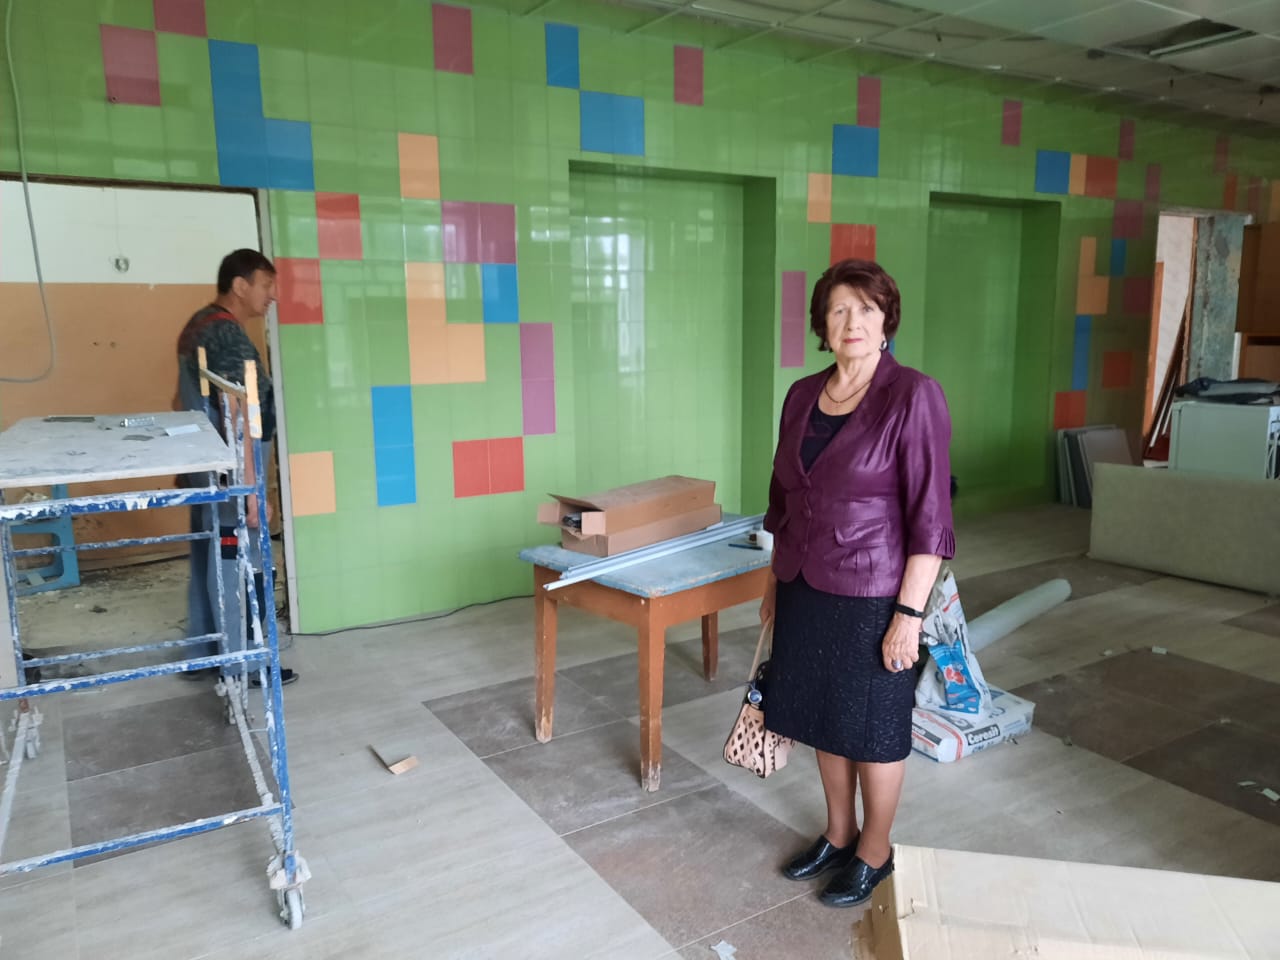 Ветеран педагогического труда А. В. Латышева посетила родную школу, чтобы посмотреть на изменения, происходящие в ходе ремонта.